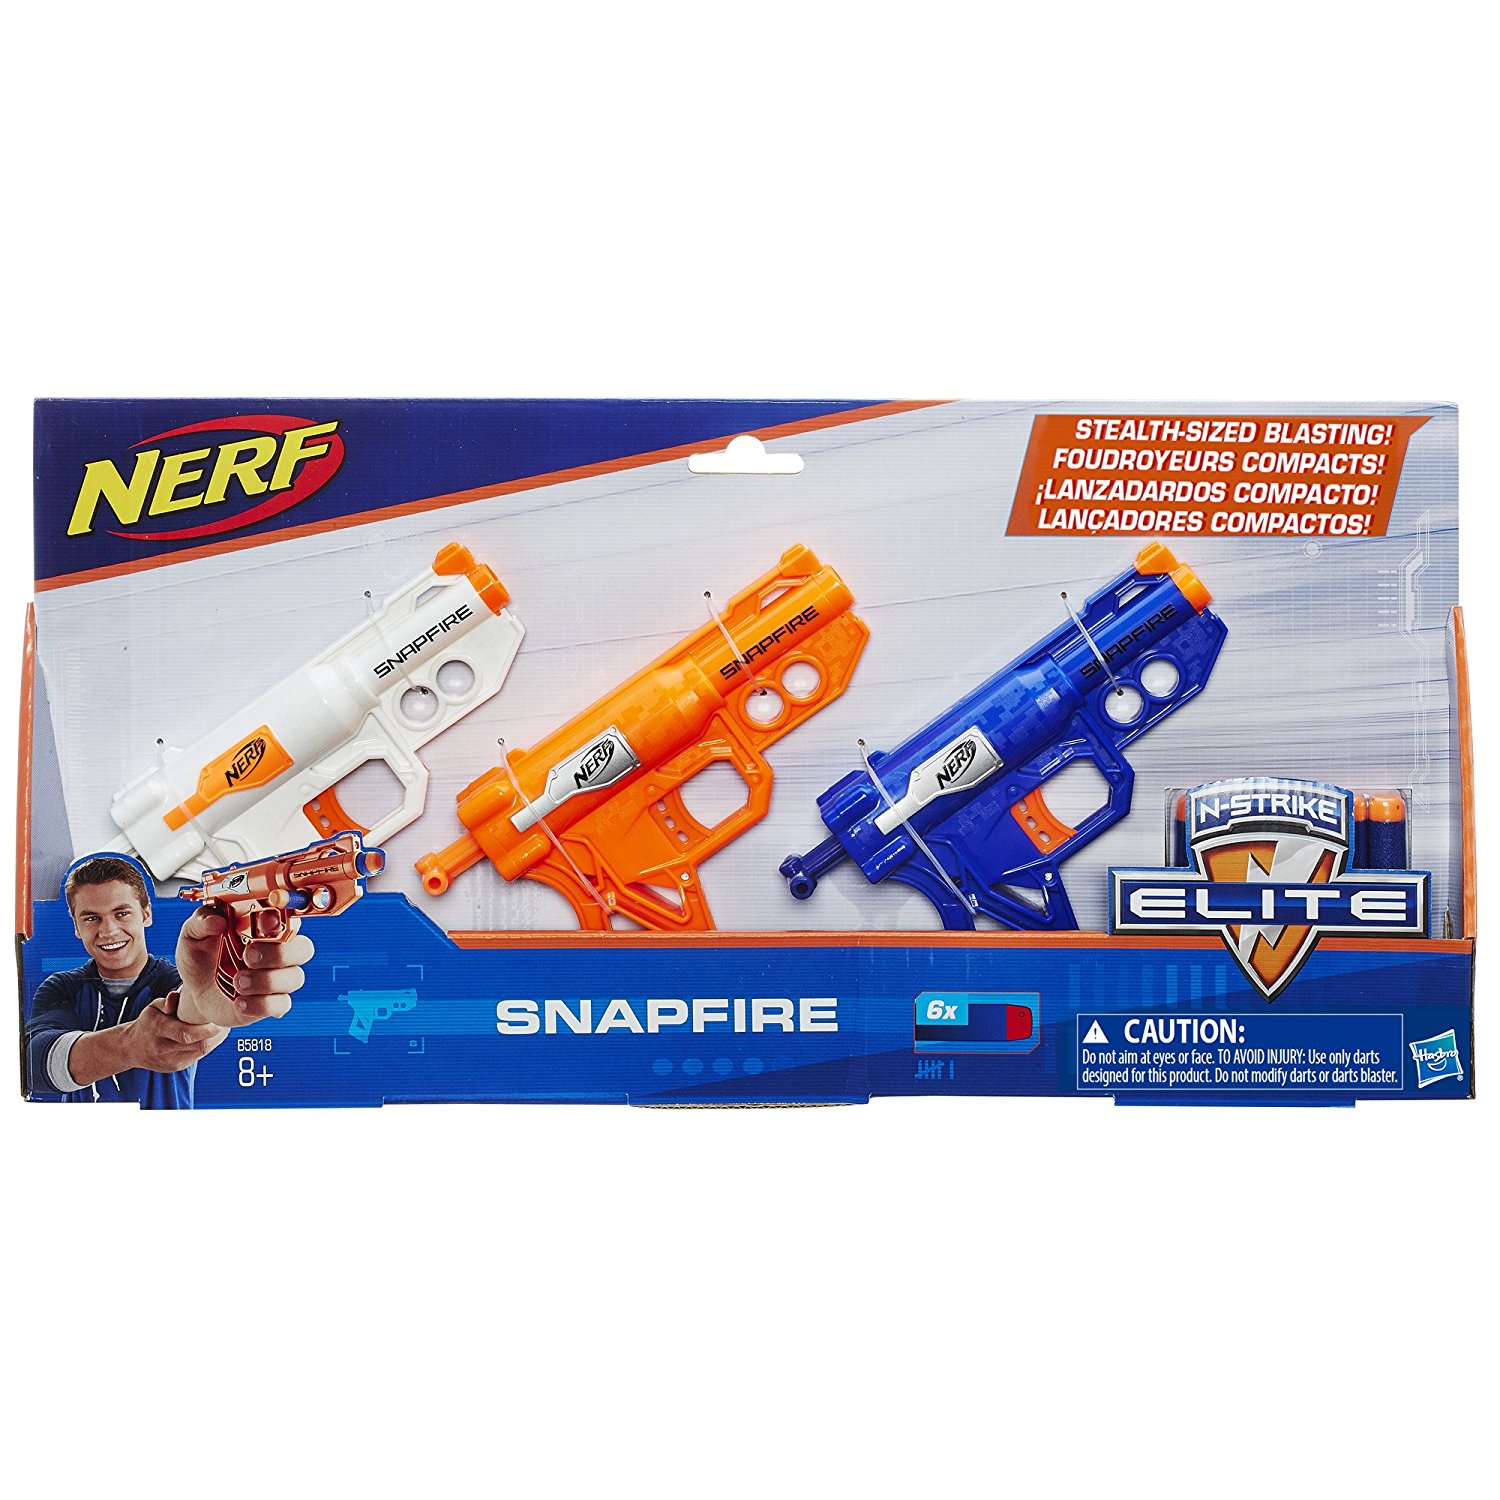 Novos Lançadores da Nerf para 2016 / New 2016 Nerf Blasters!